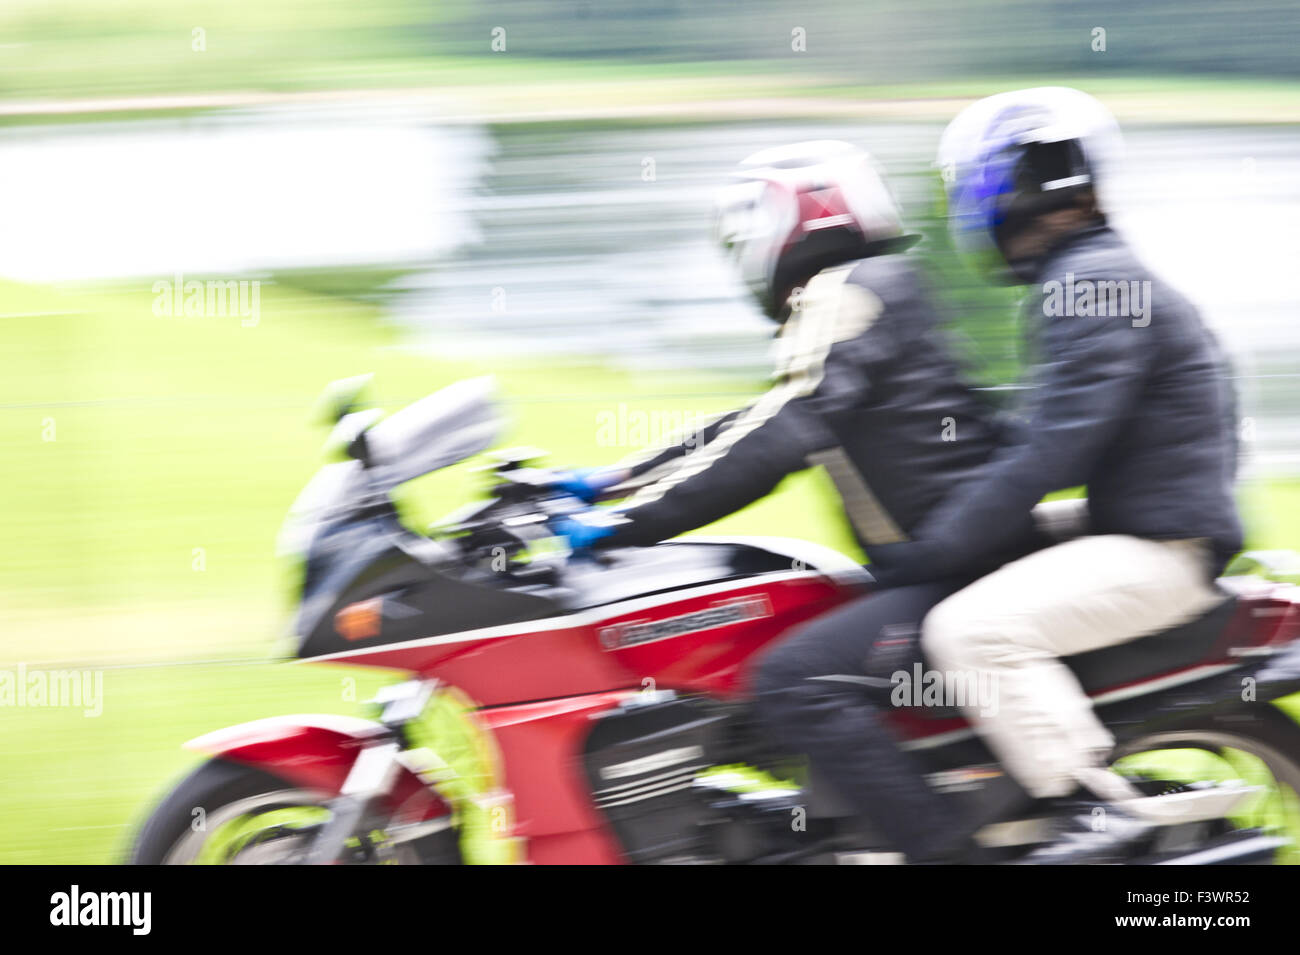 Withh leurs rider moto,motion blur Banque D'Images